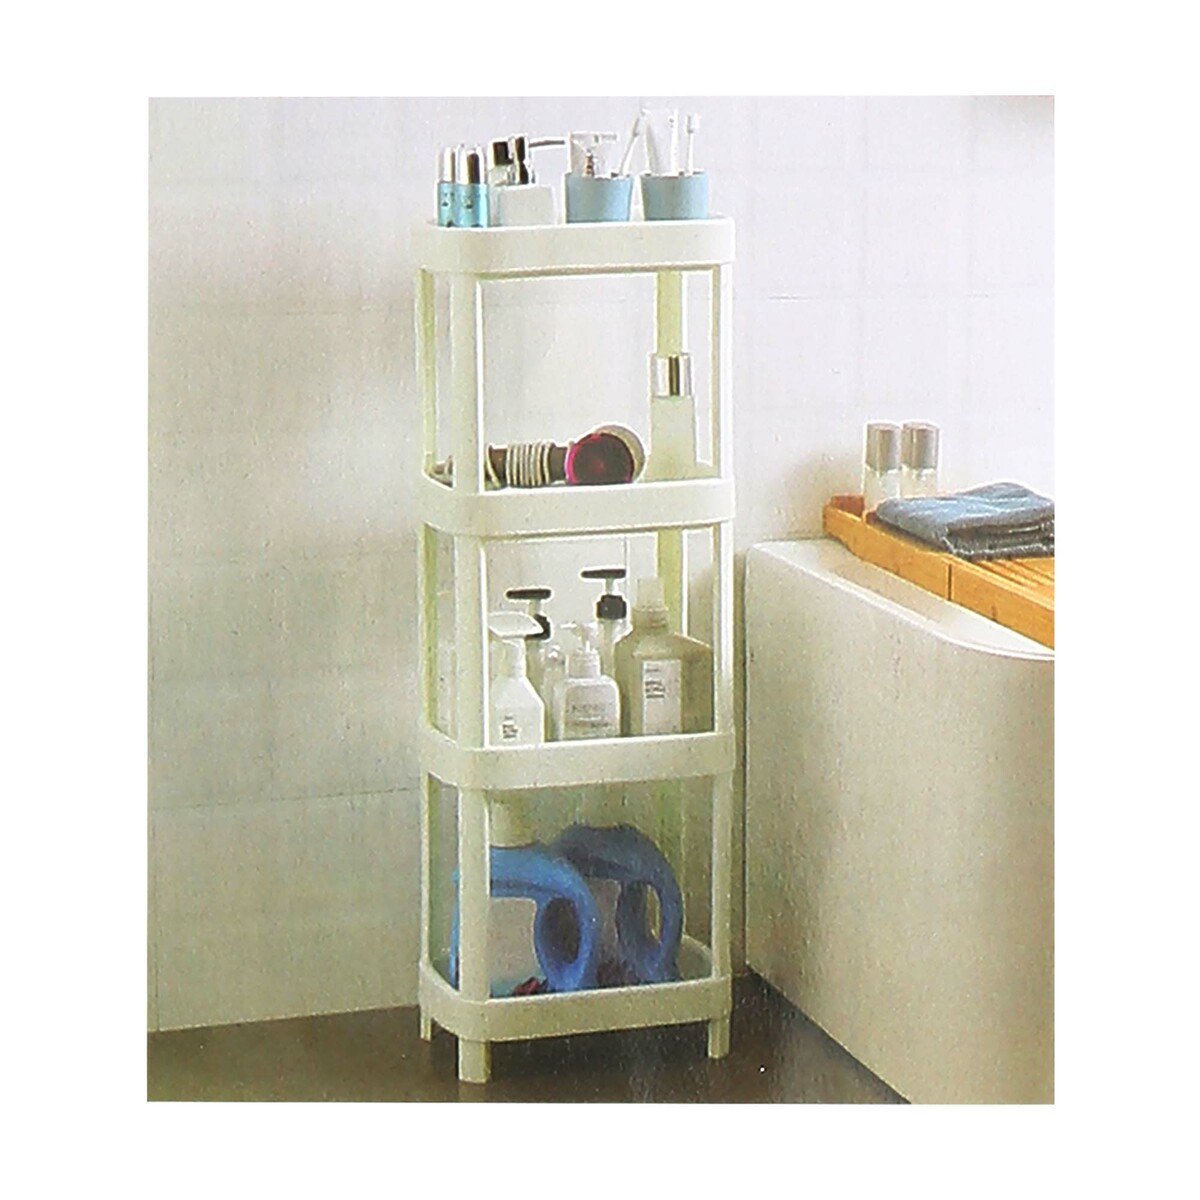 Home Plastic Storage Shelf IKE-21 Size: L36xW23xH100cm